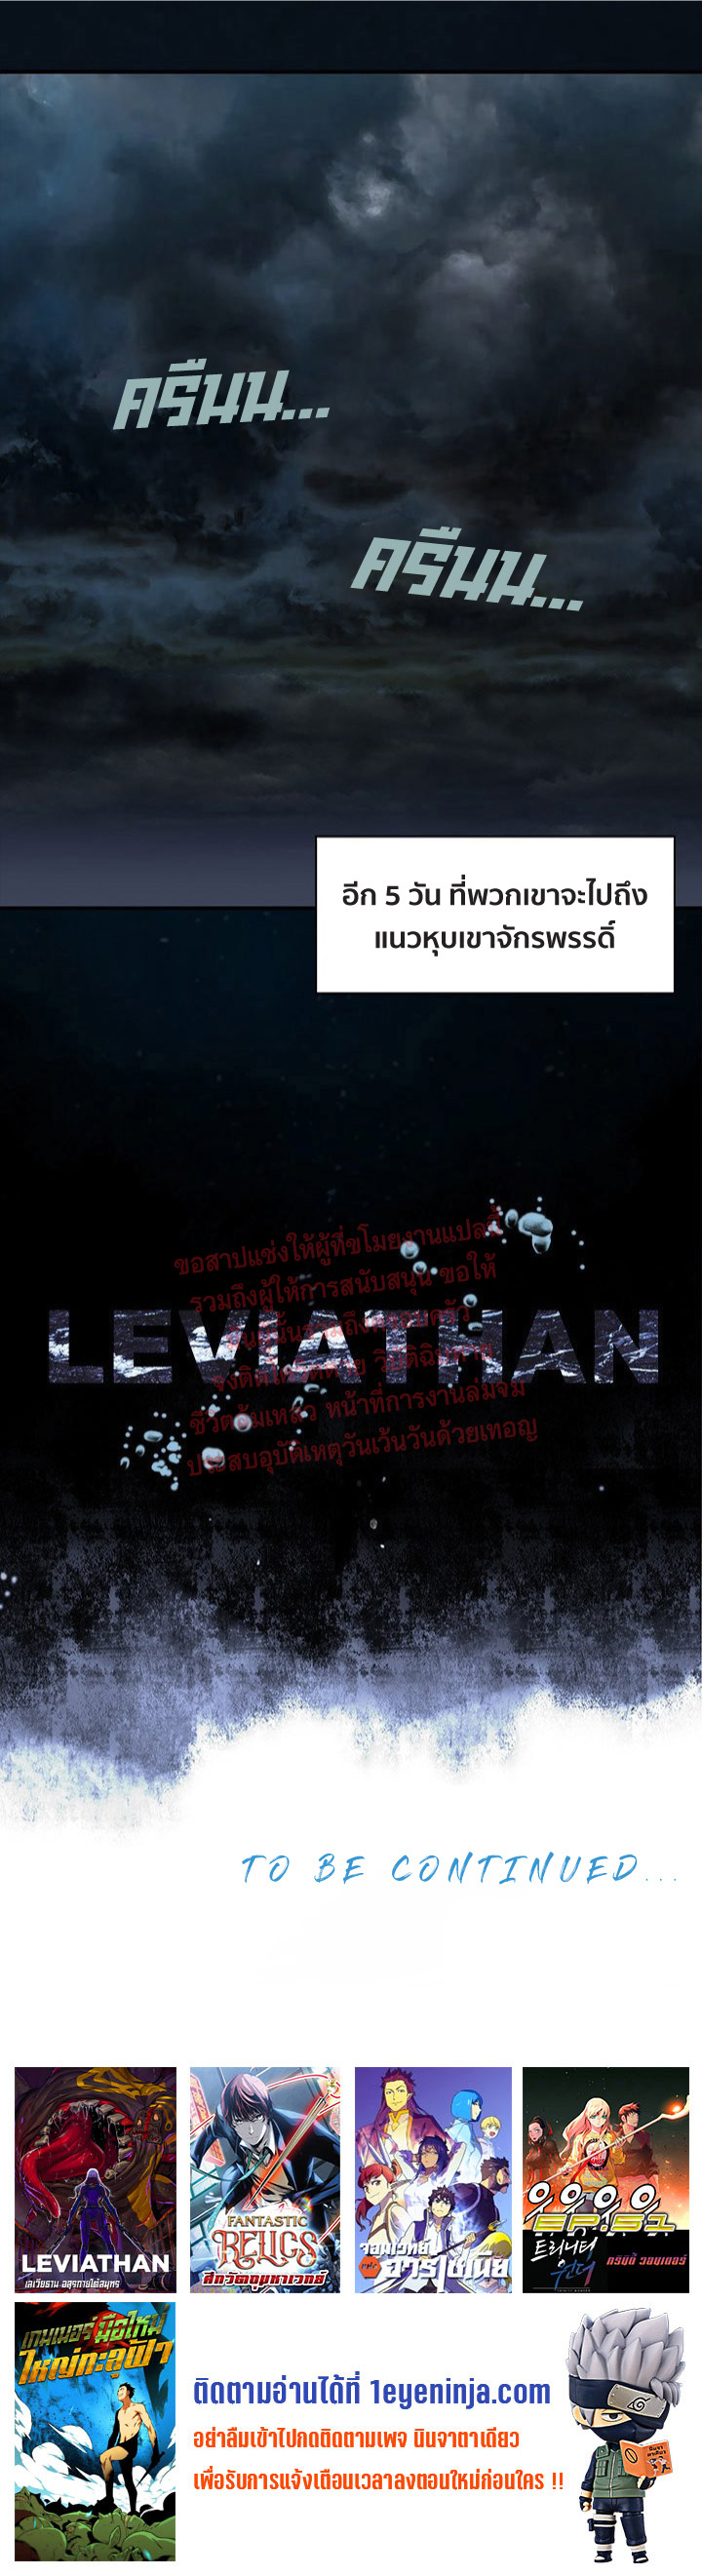 Leviathan164 30